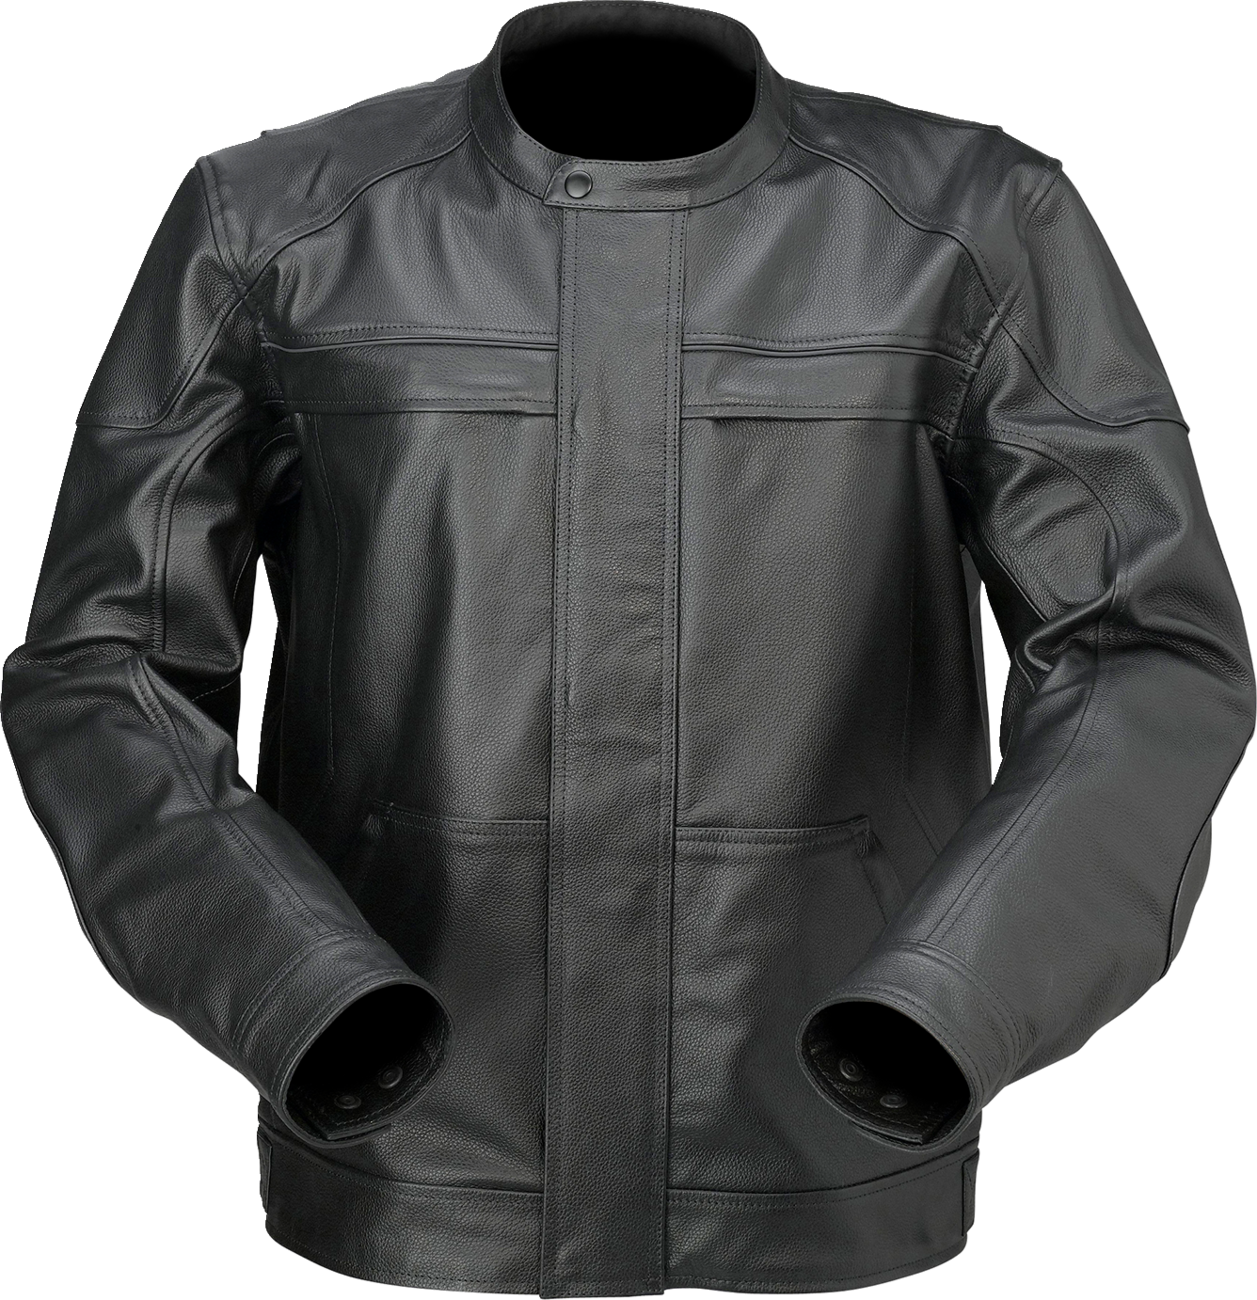 Z1R Justifier Leather Jacket - Black - 2XL 2810-3916